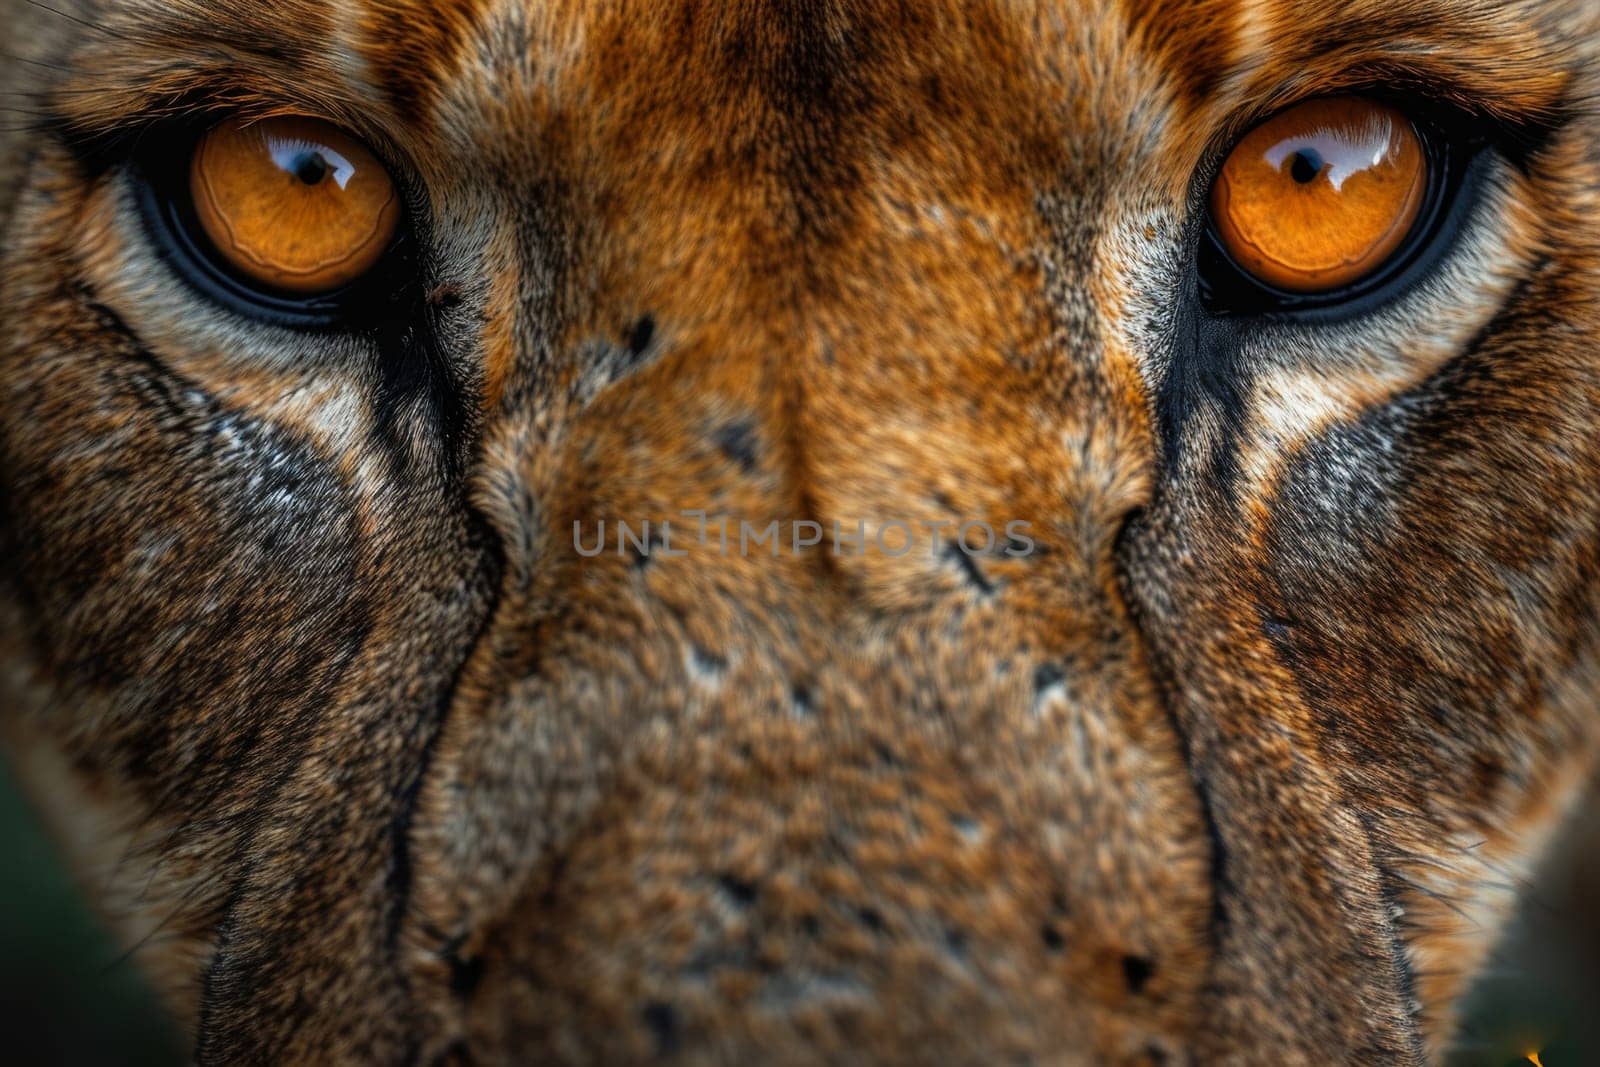 Portrait of a lion's muzzle in close-up. The Lion's head.